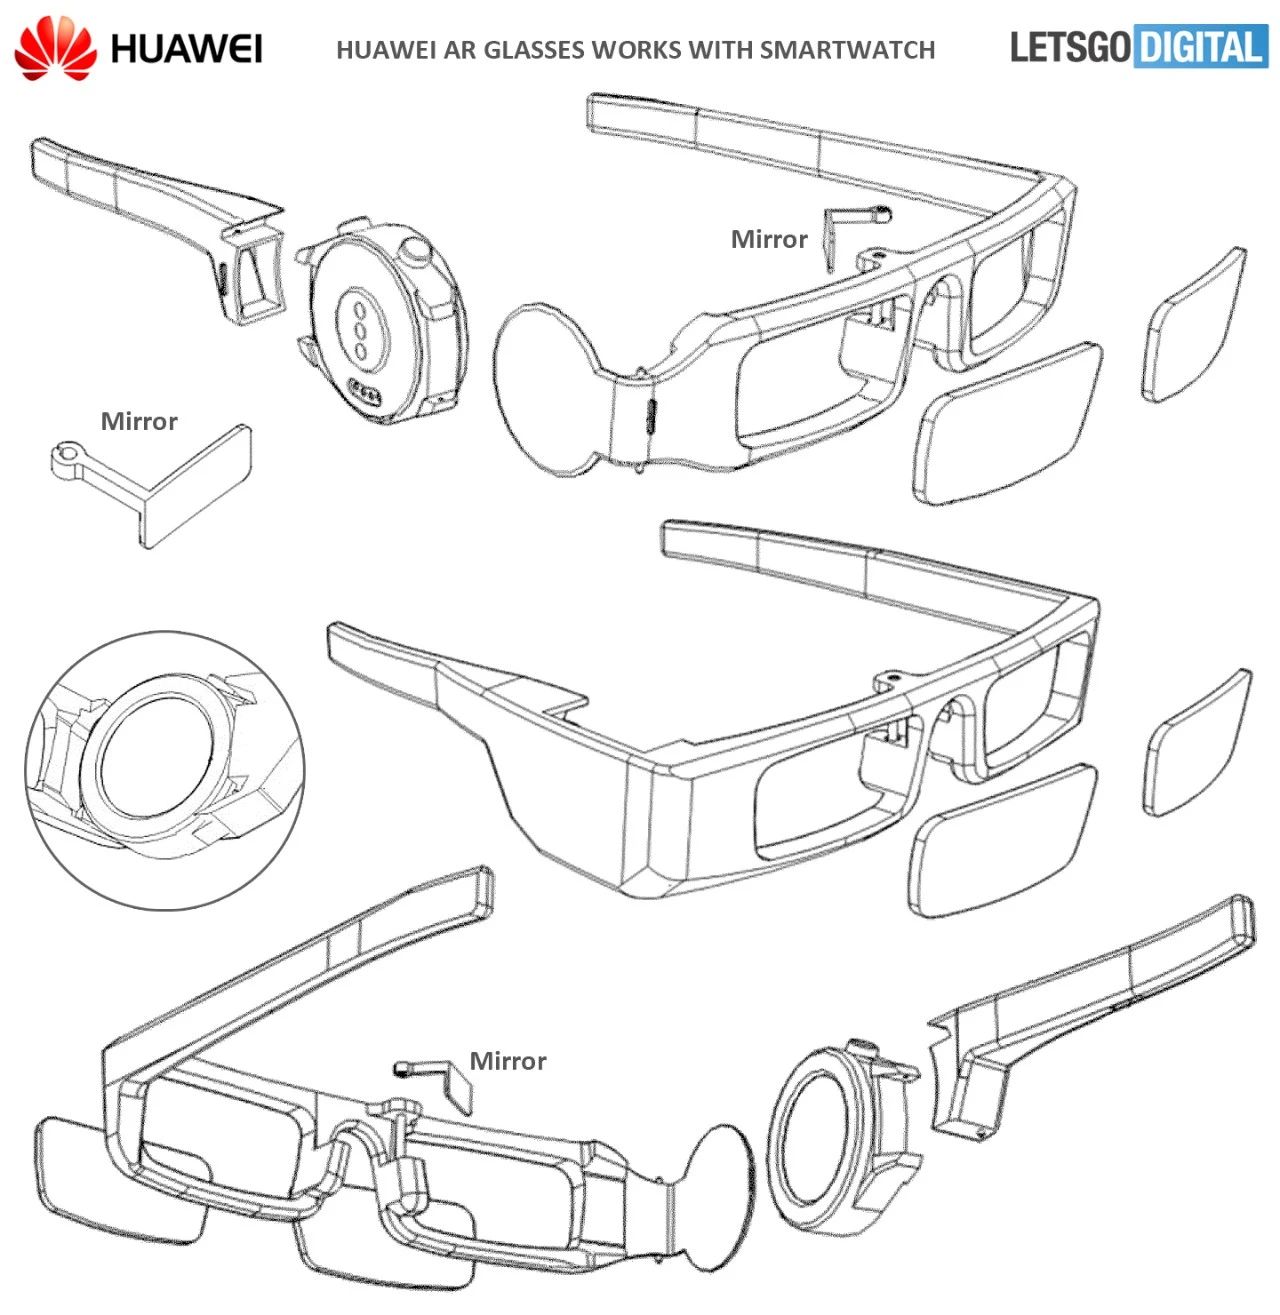 华为获得AR眼镜相关专利授权；iQOO Z5官宣9月23日发布